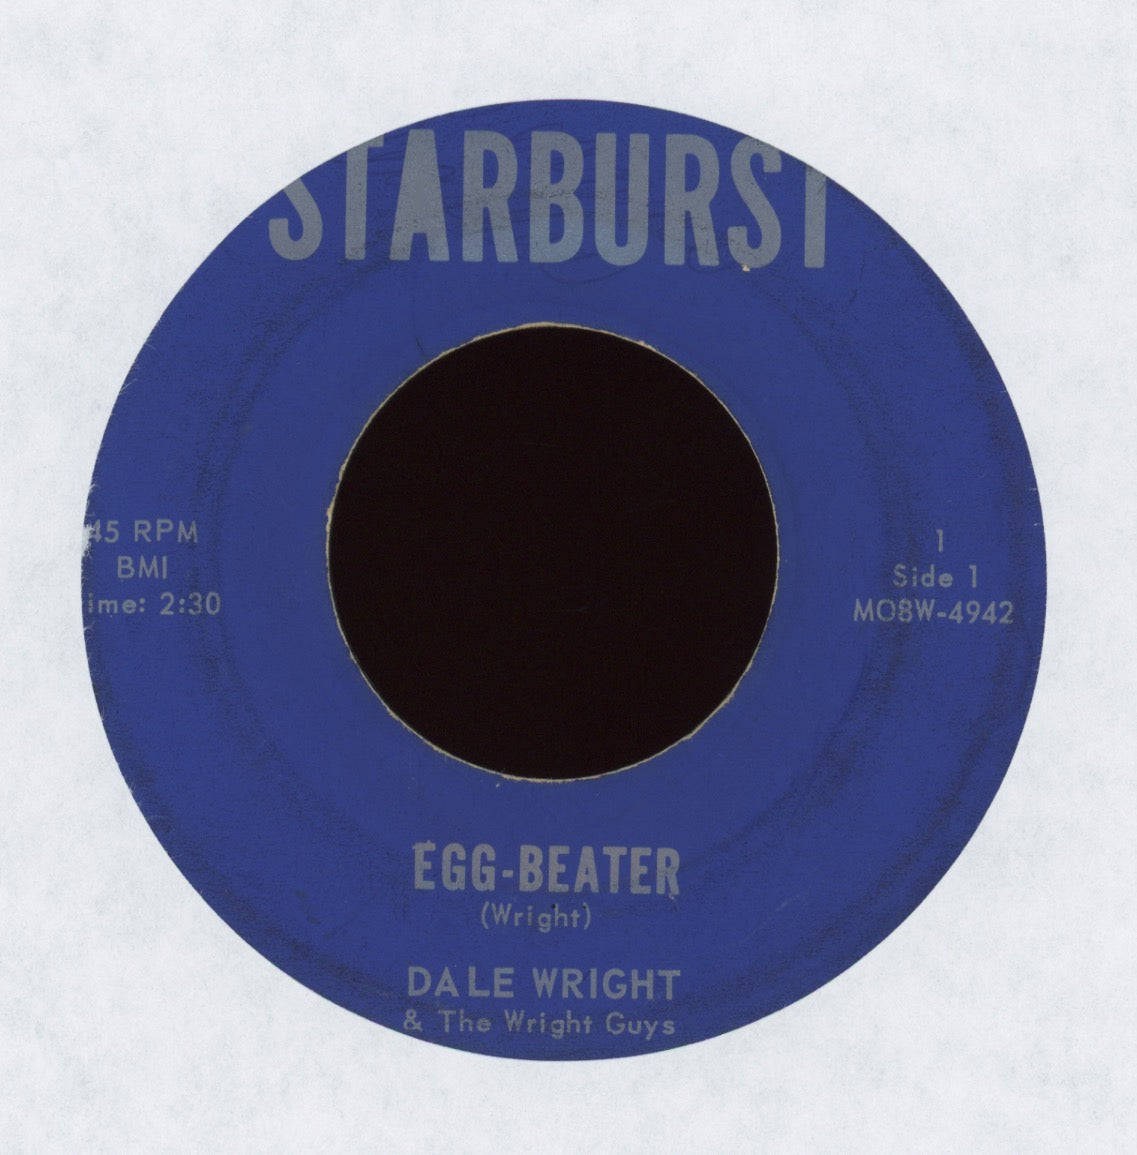 Dale Wright - Egg-Beater on Starburst